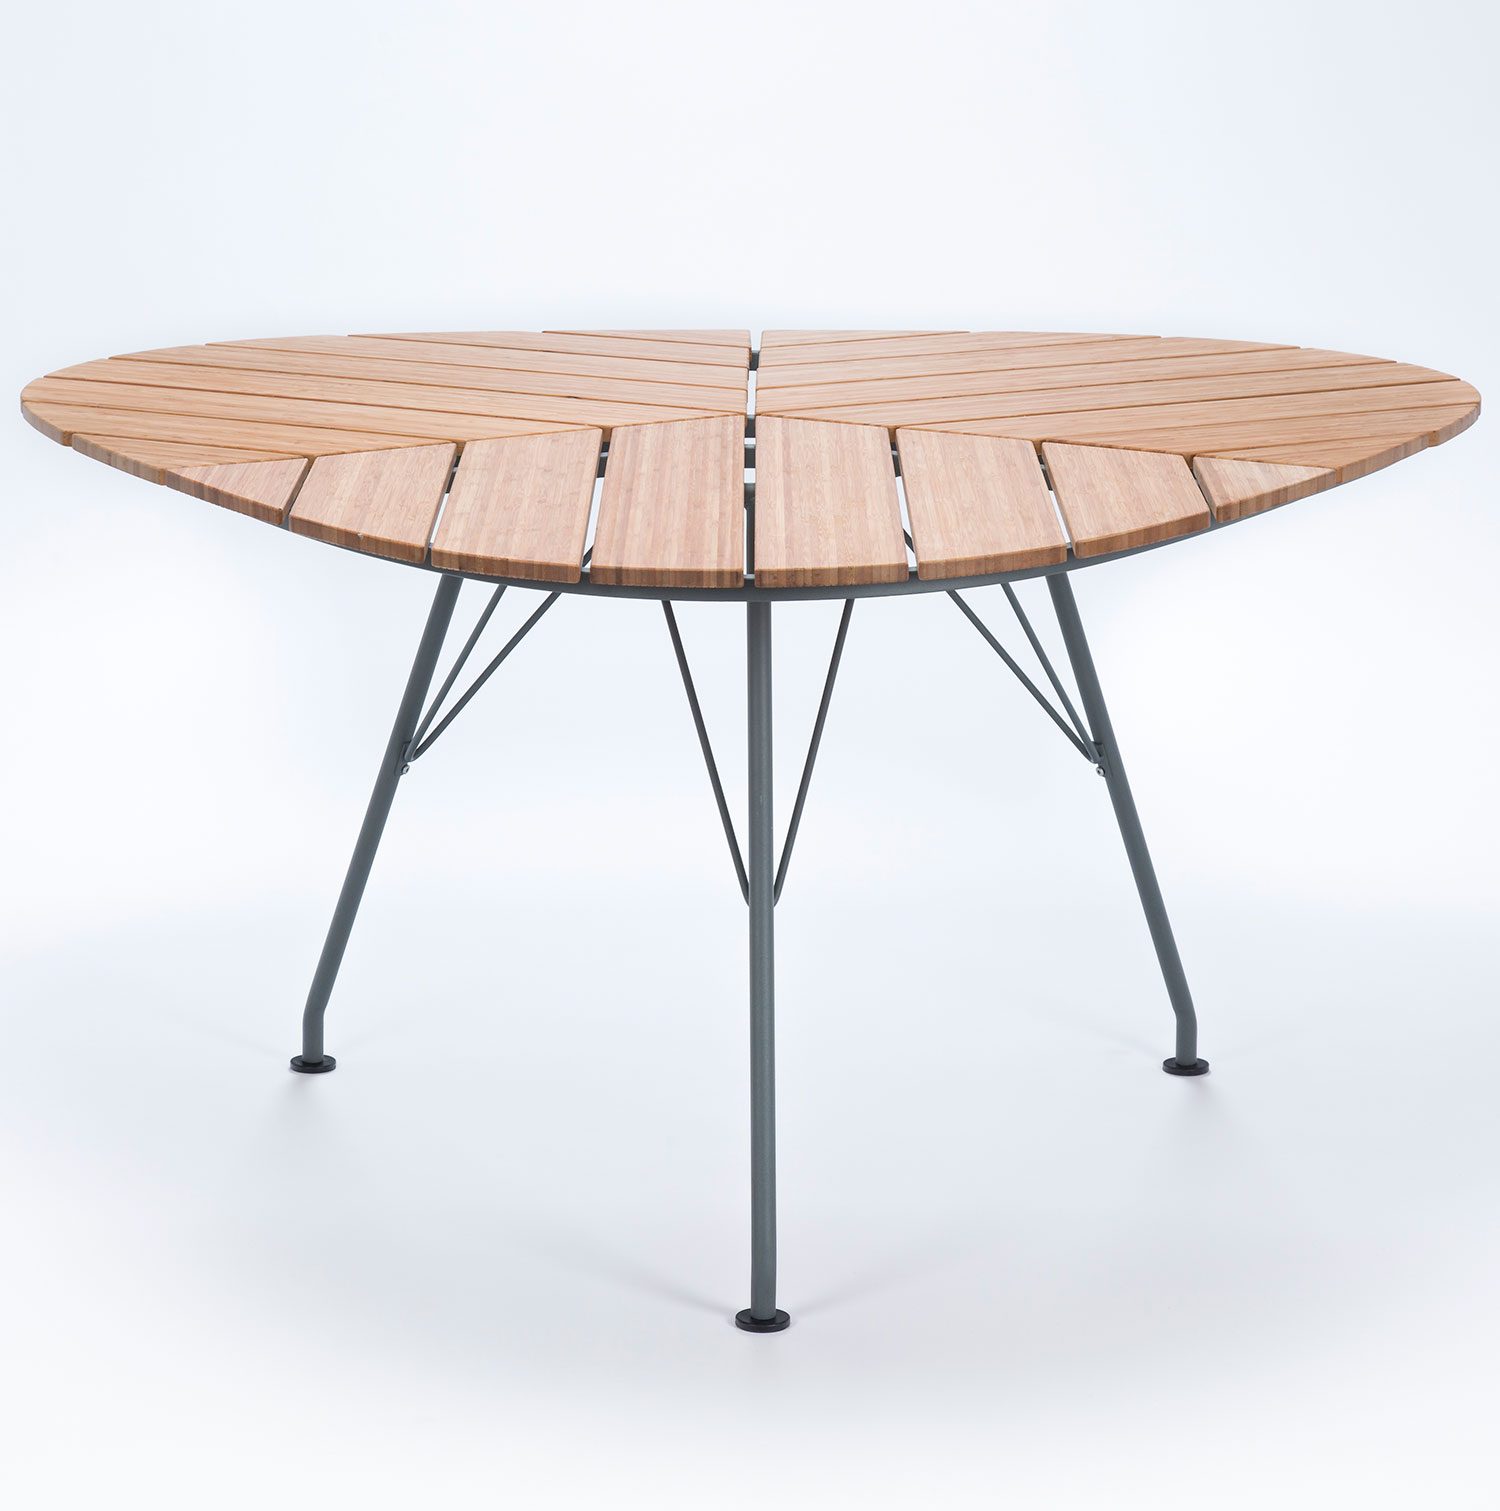 Leaf är ett trekantigt bord från danska Houe med bambuskiva och stålstativ.